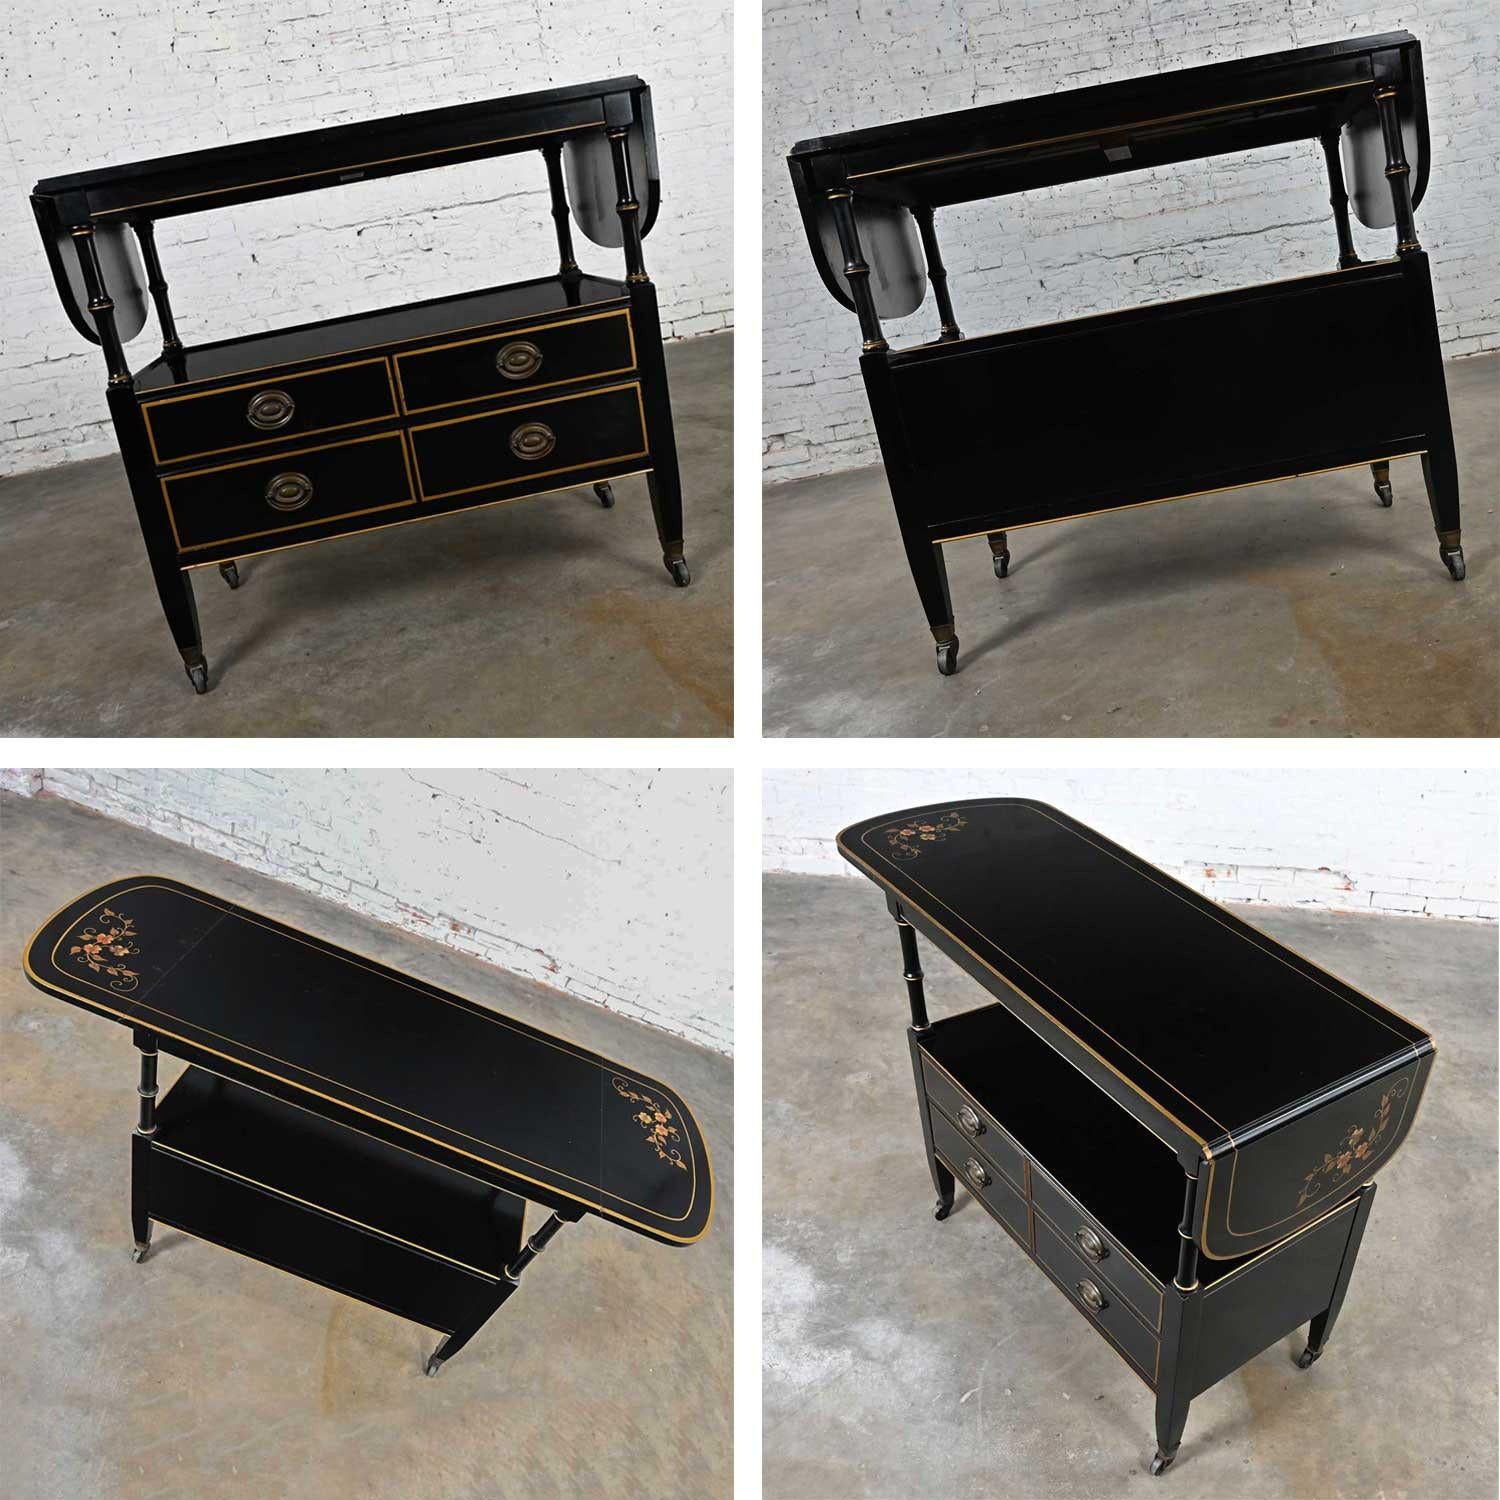 Mid-20th C. Regency Style Drexel Black & Gold Drop Leaf Rolling Server Bar Cart For Sale 2